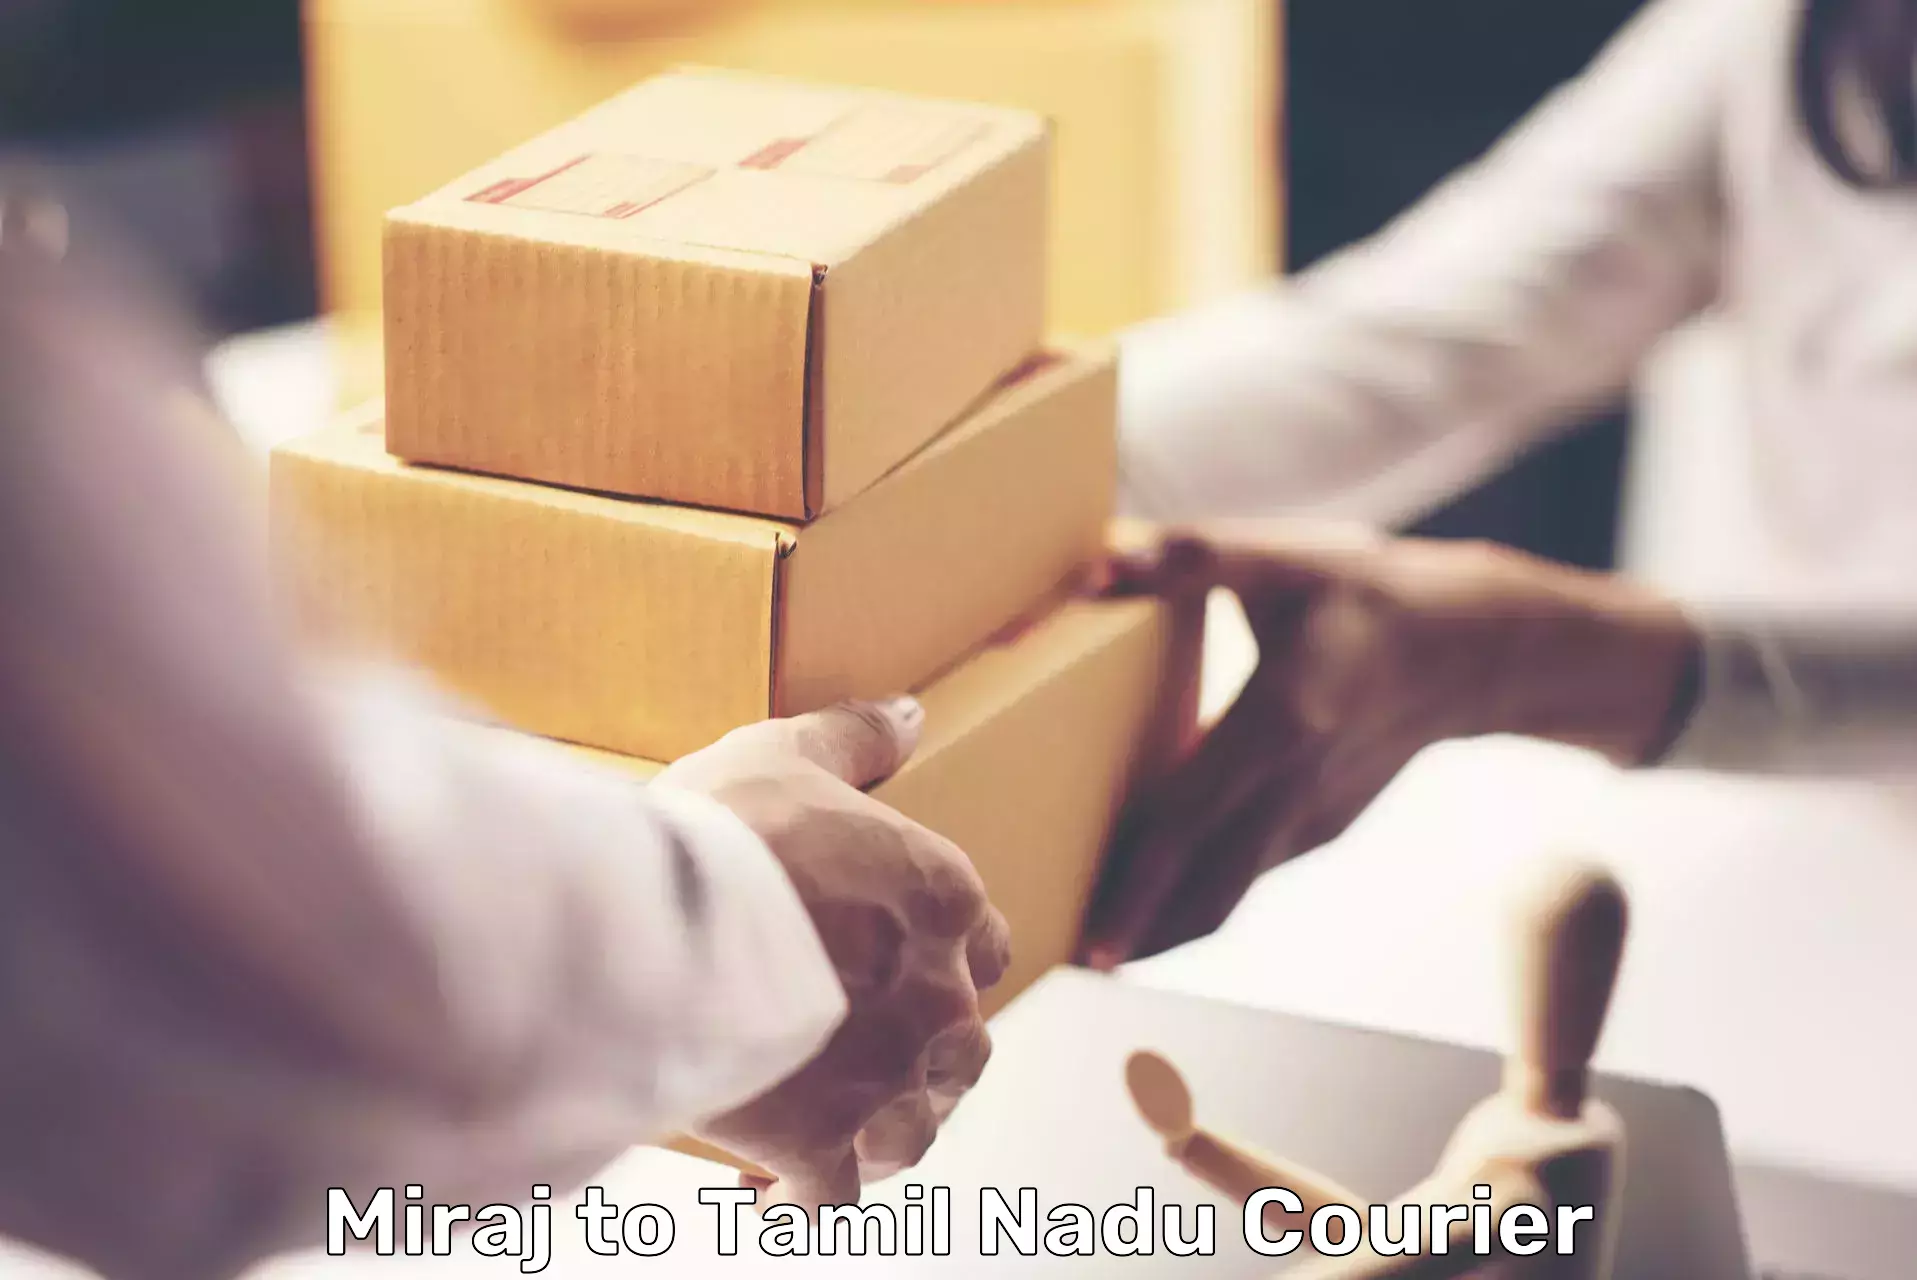 Reliable courier service Miraj to Oriyur